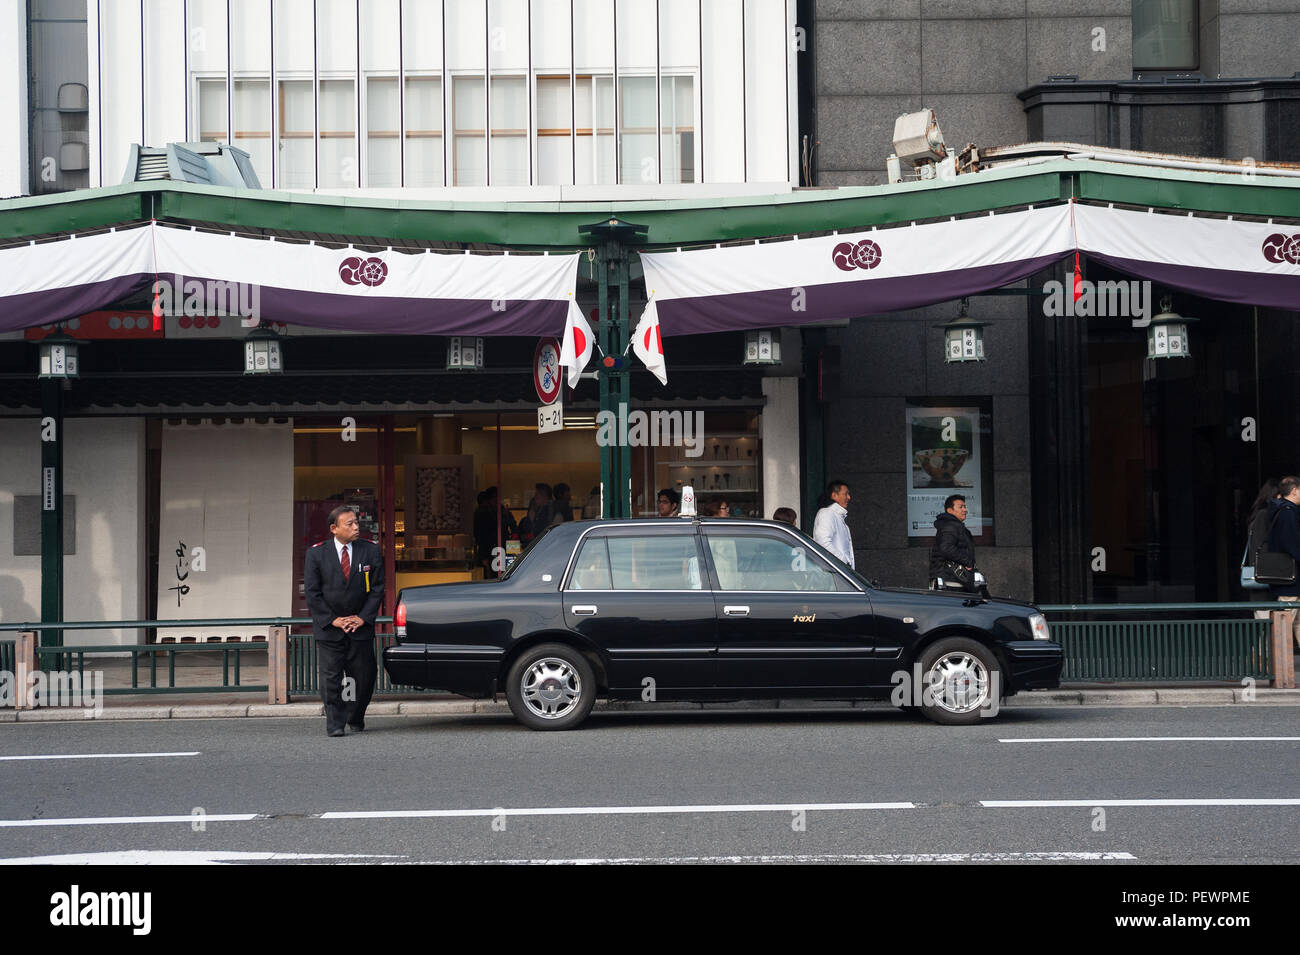 23.12.2017, Kyoto, Japon, Asie - Un chauffeur de taxi attend les clients à côté de son taxi dans une rue de Kyoto. Banque D'Images